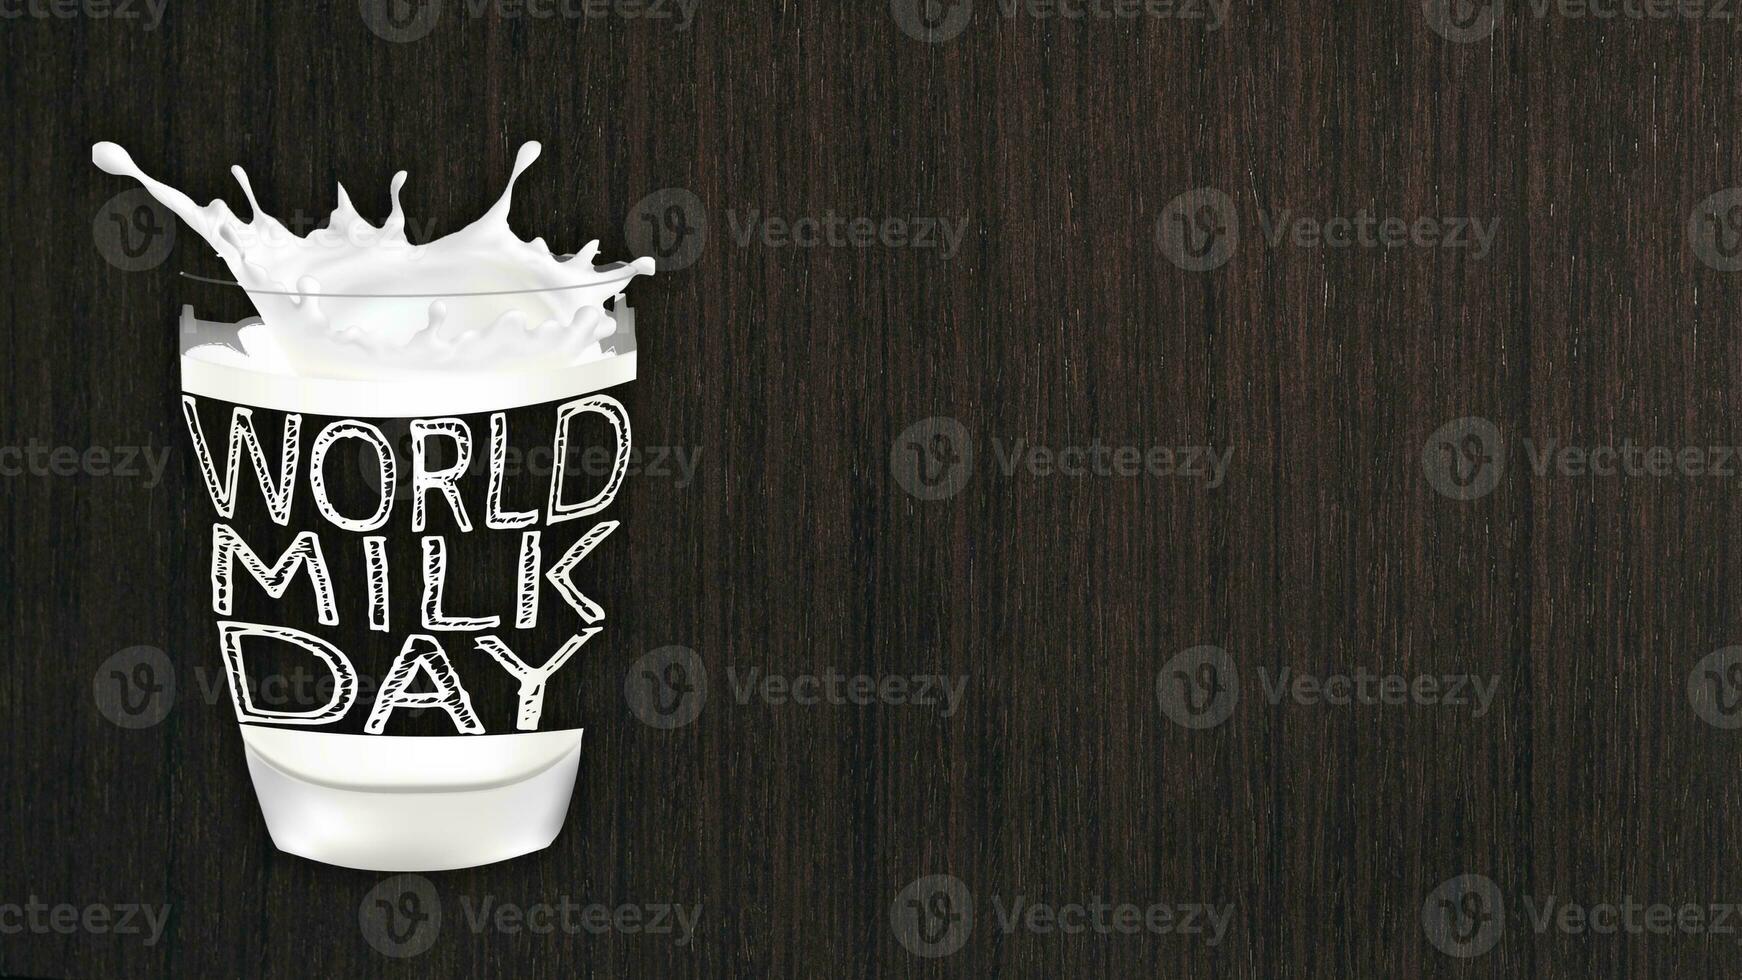 creatief 'wereld melk dag' illustratie vieren wereld melk dag ontwerp Aan een glas van melk foto